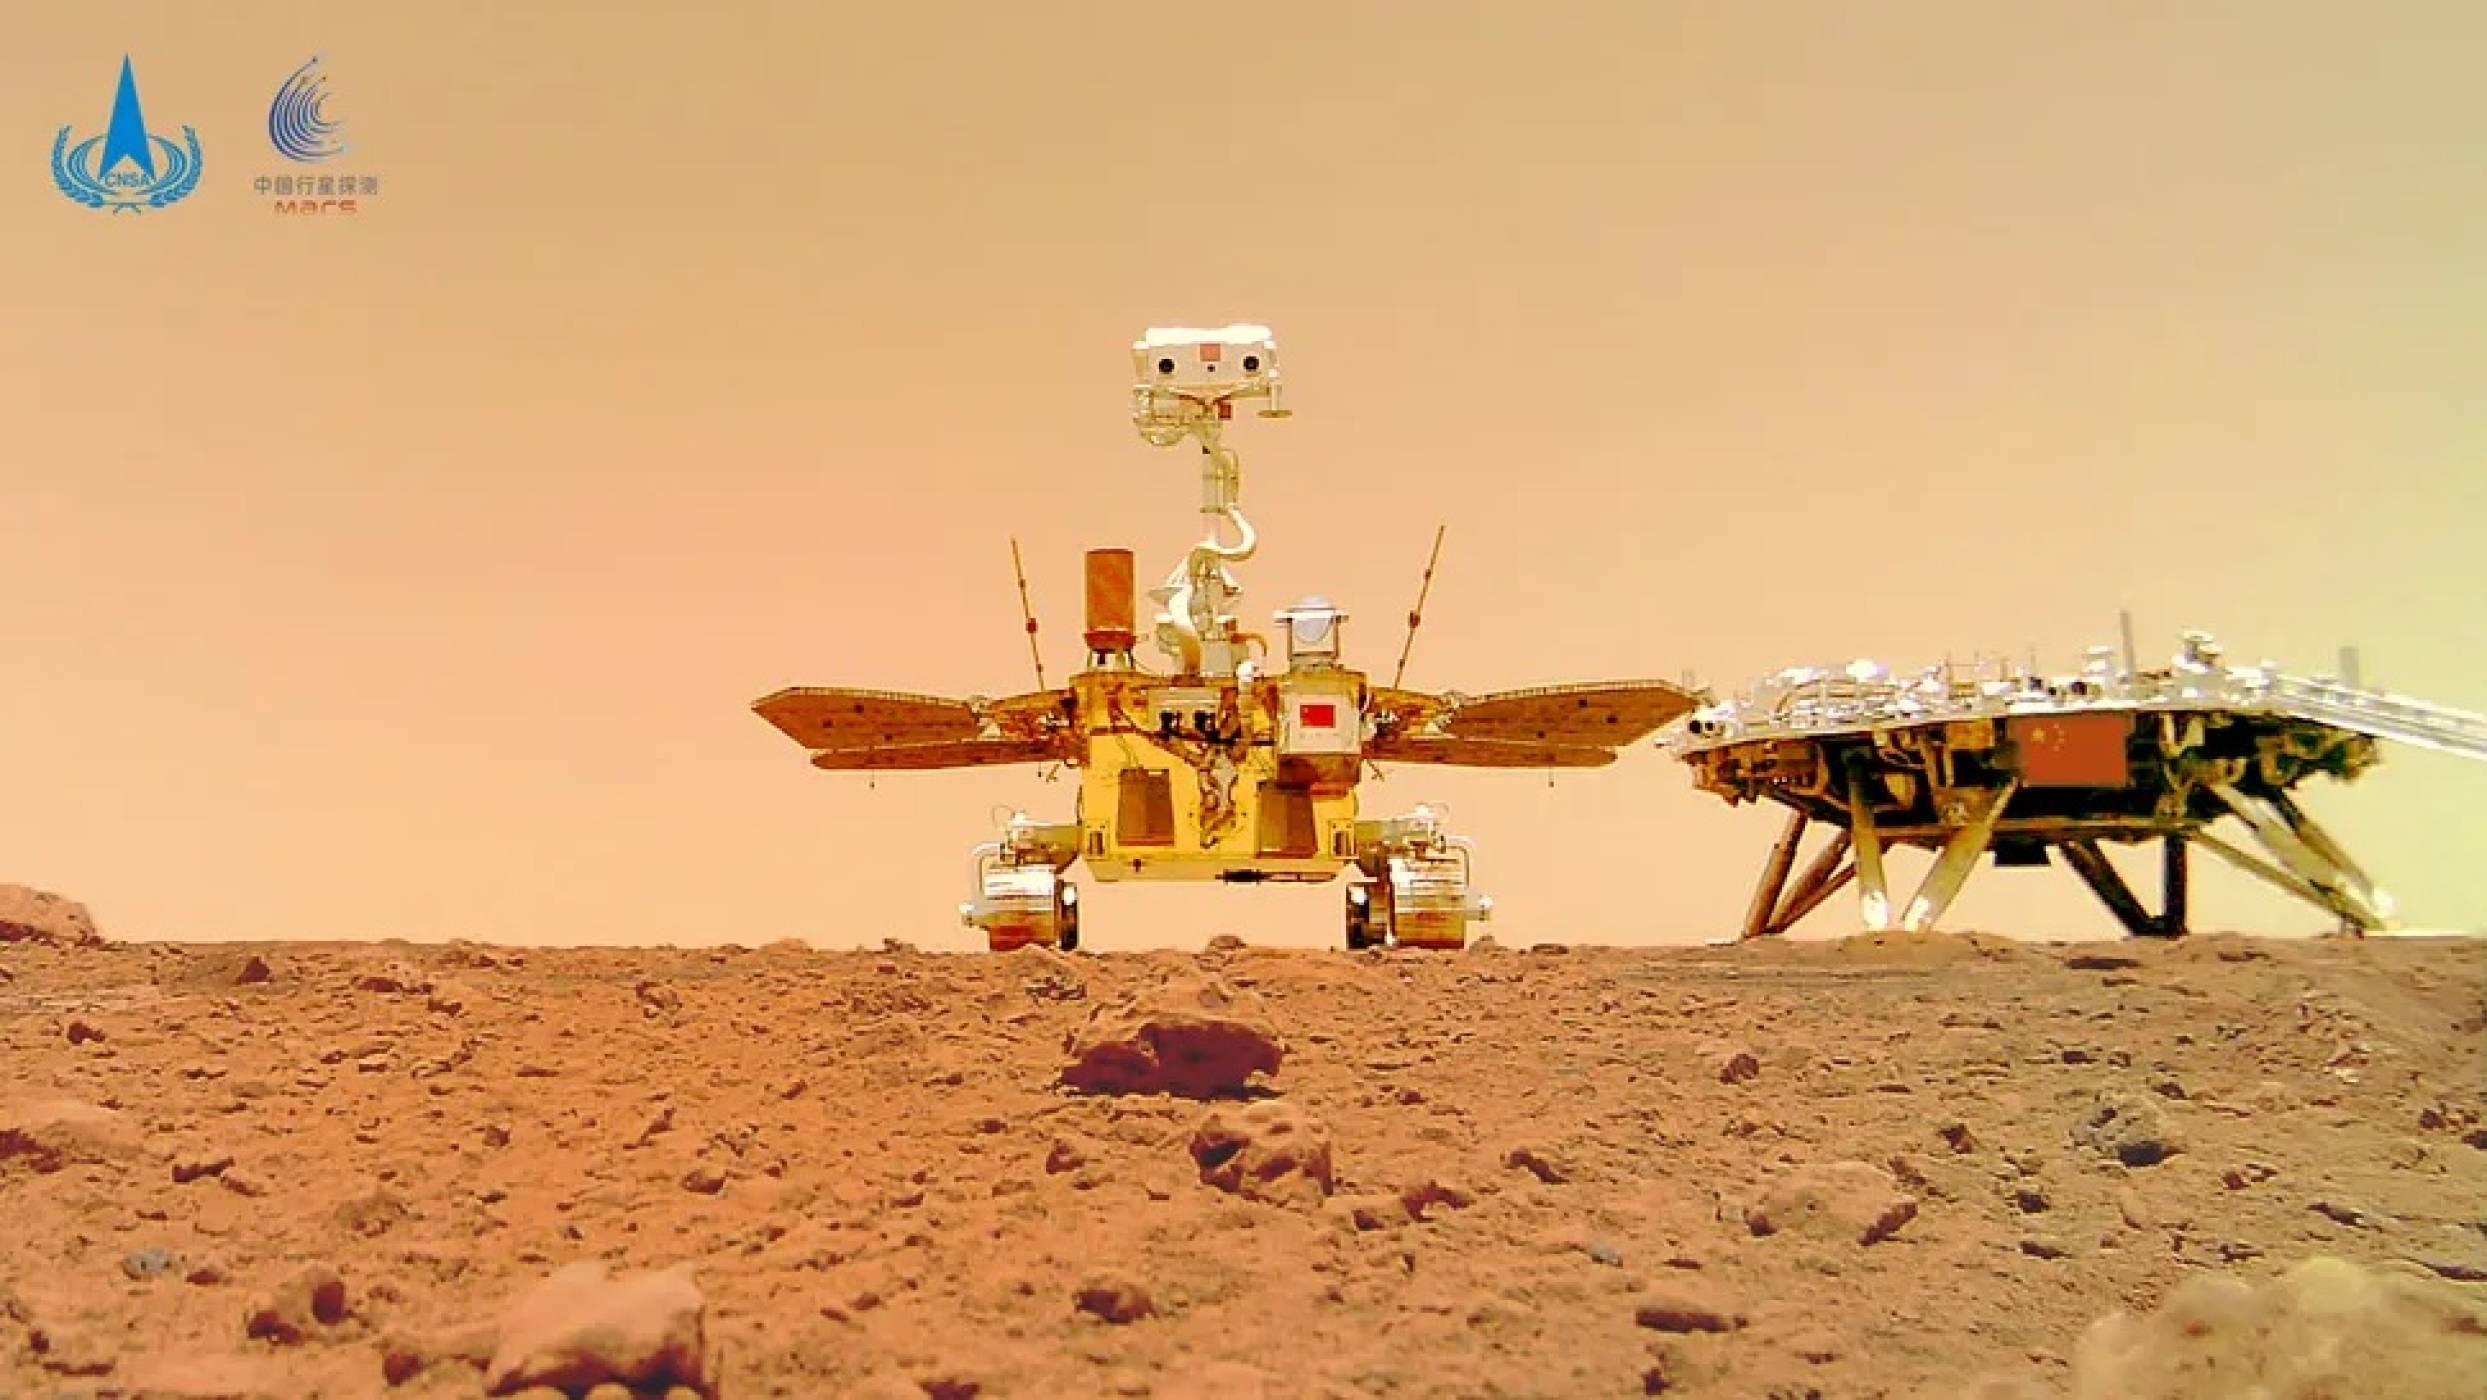 Китайски учени създадоха модел на марсианска атмосфера за тестове